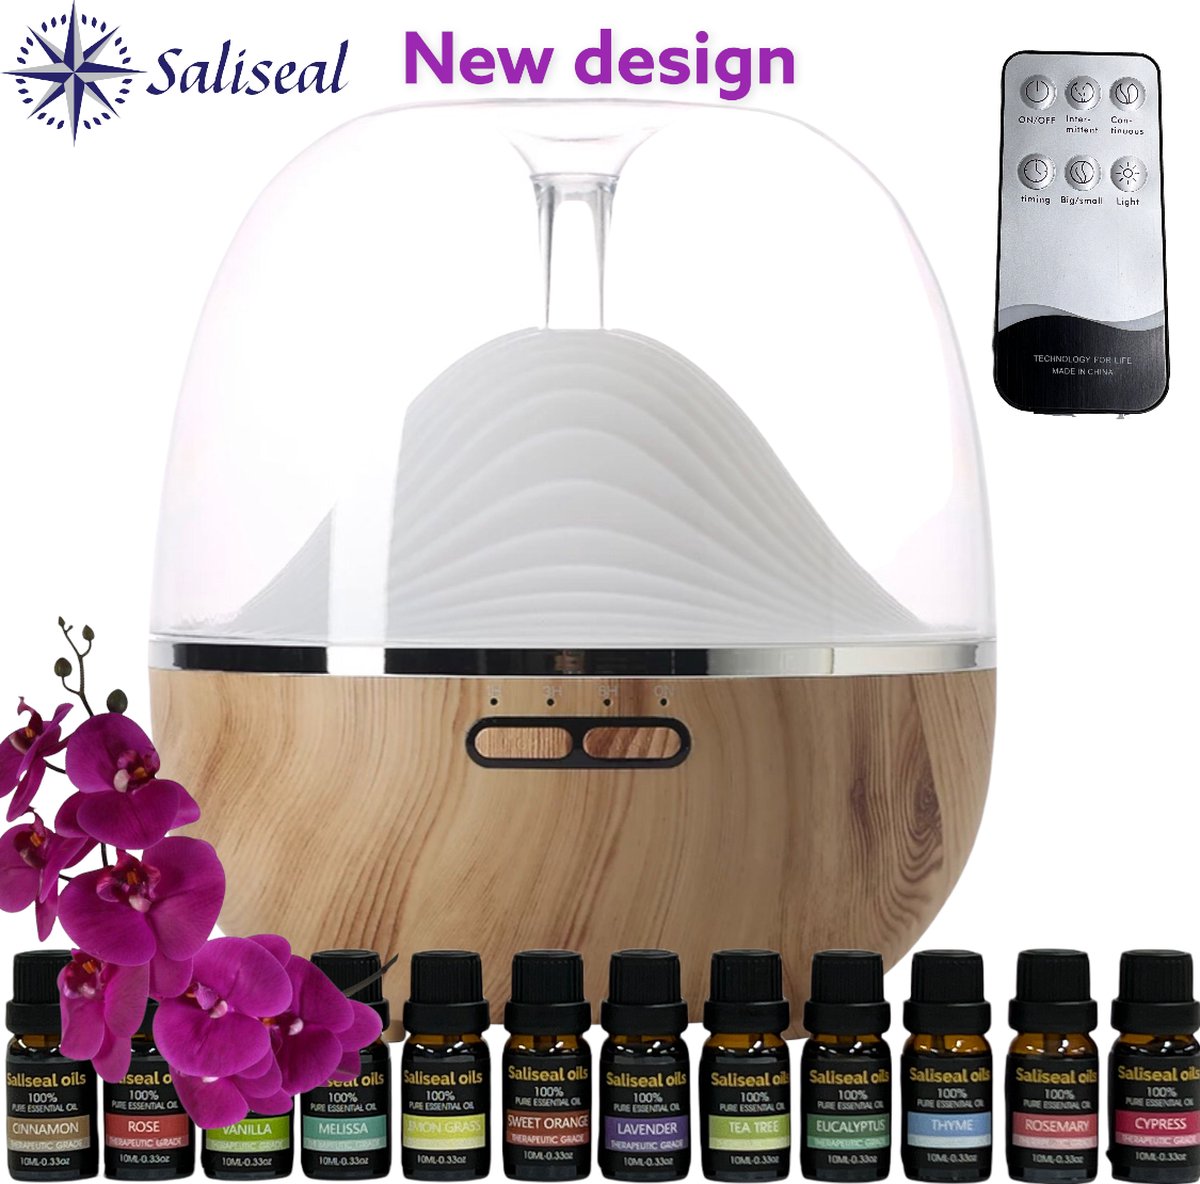 NIEUW | Saliseal Aroma diffuser |Luchtbevochtiger + 12 delige Etherische olie set | Aroma therapie